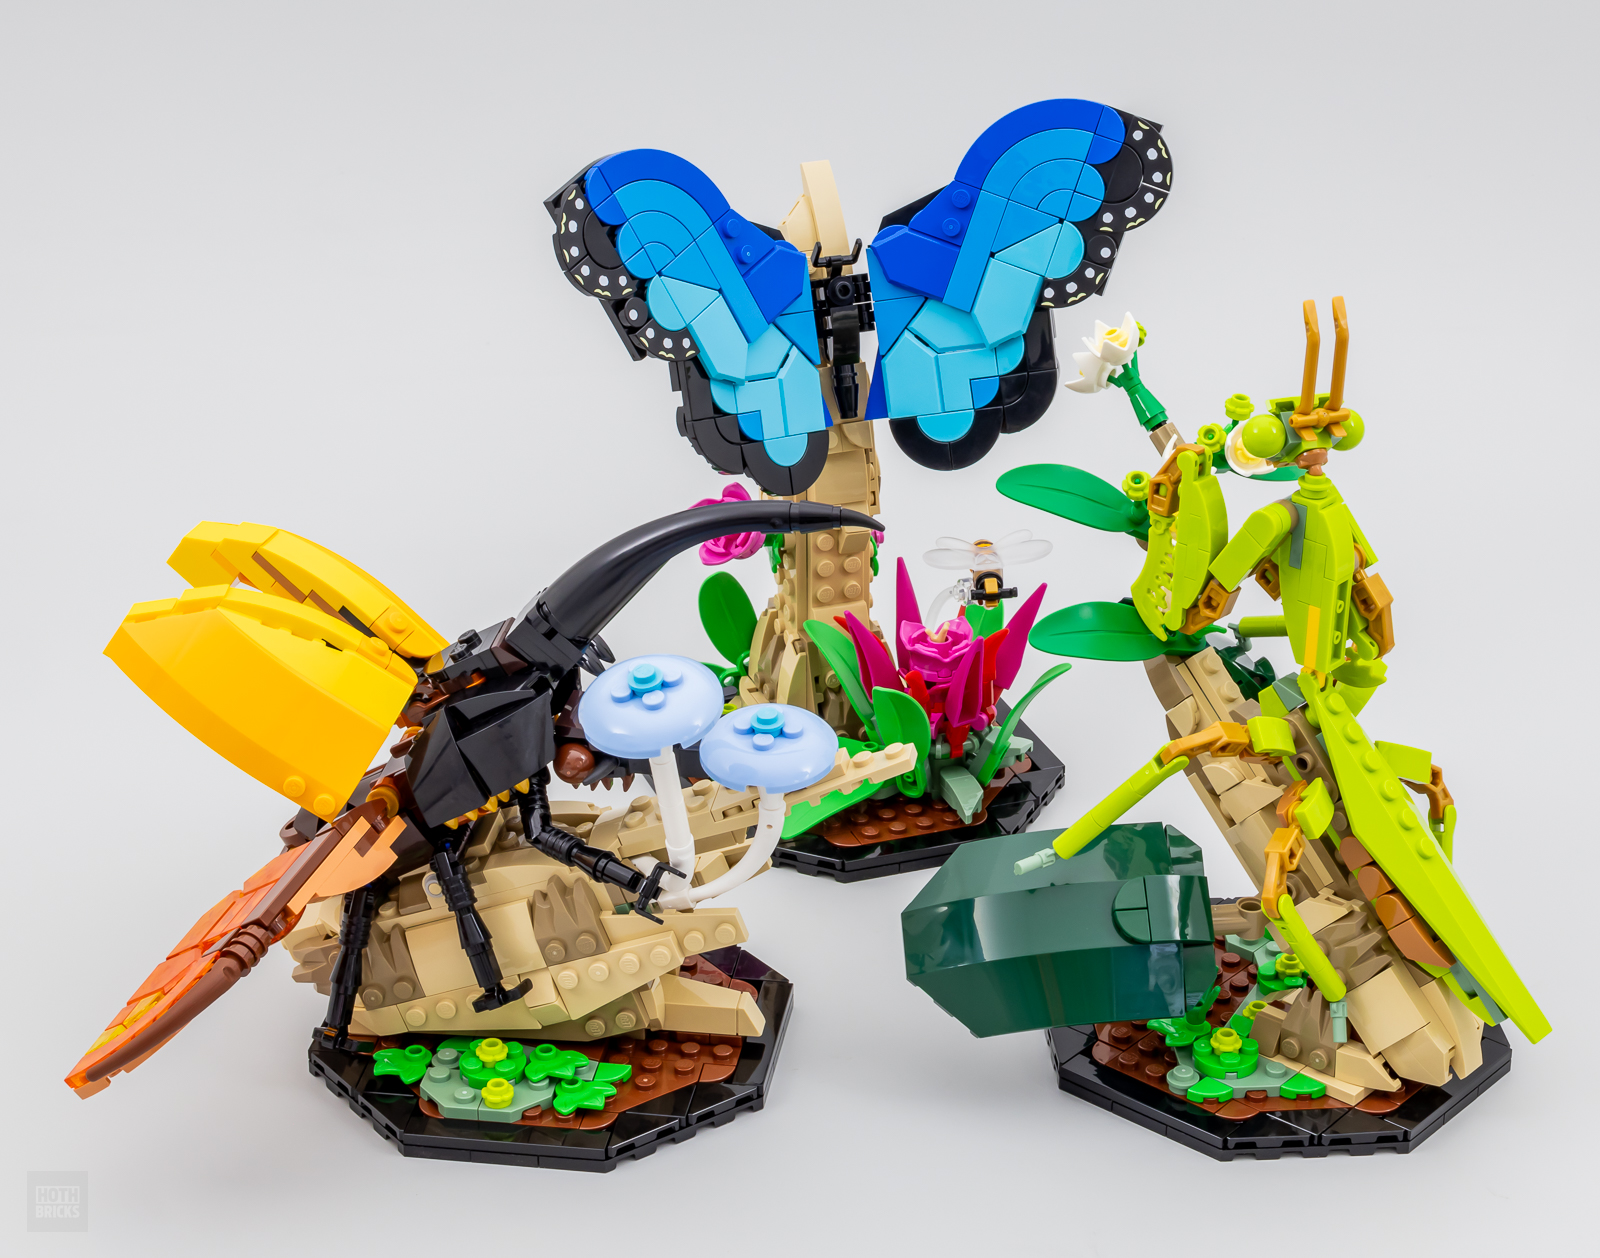 LEGO IDEAS - Arthropod Model Organisms